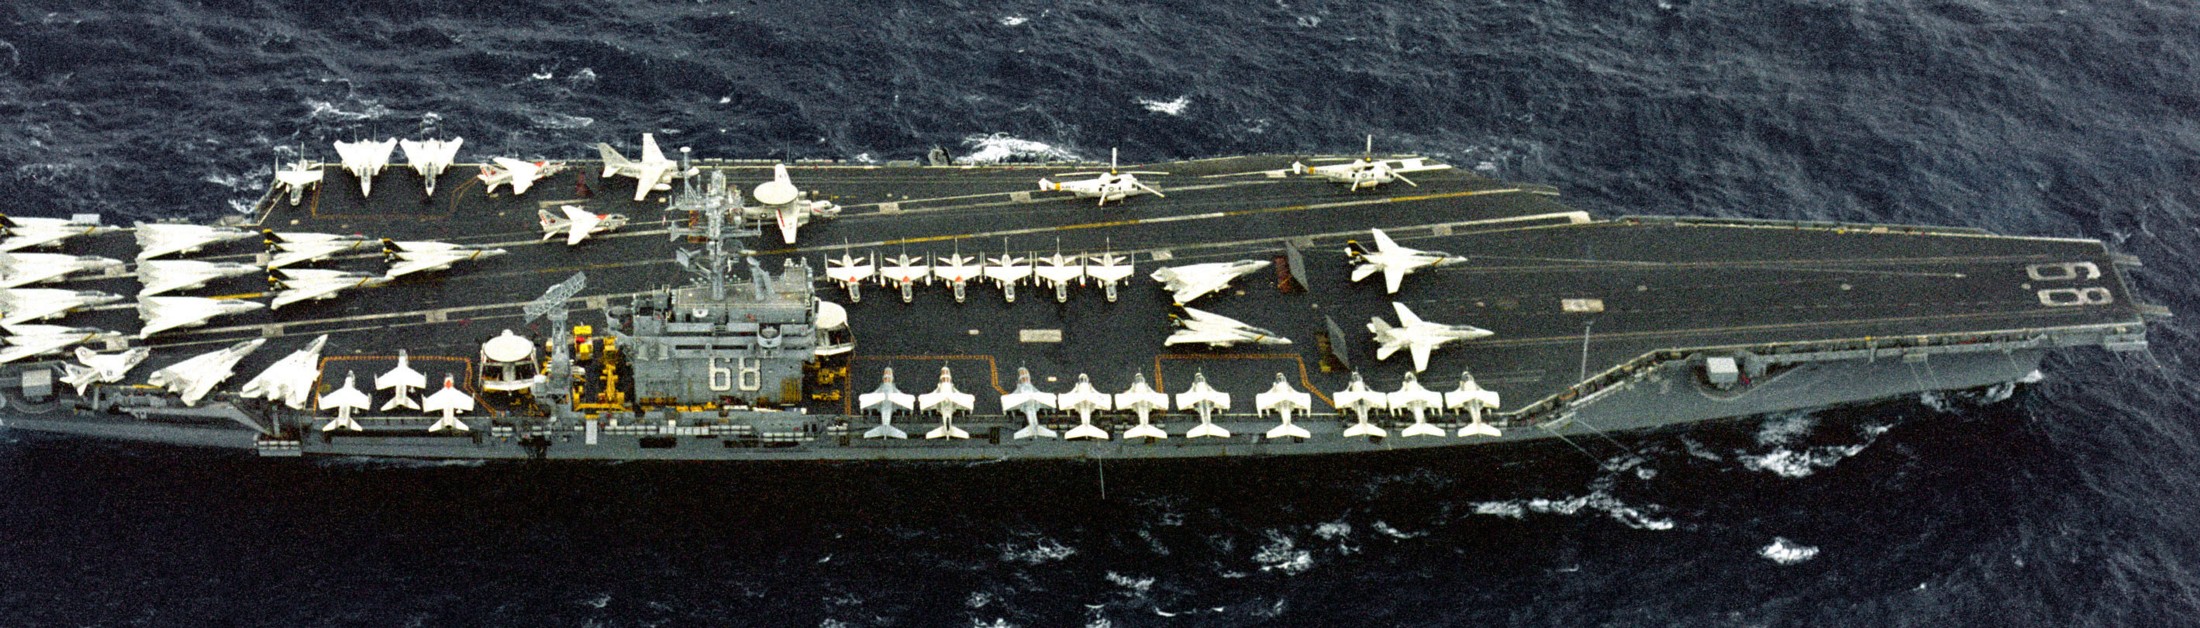 cvn-68 uss nimitz aircraft carrier air wing cvw-8 us navy 33